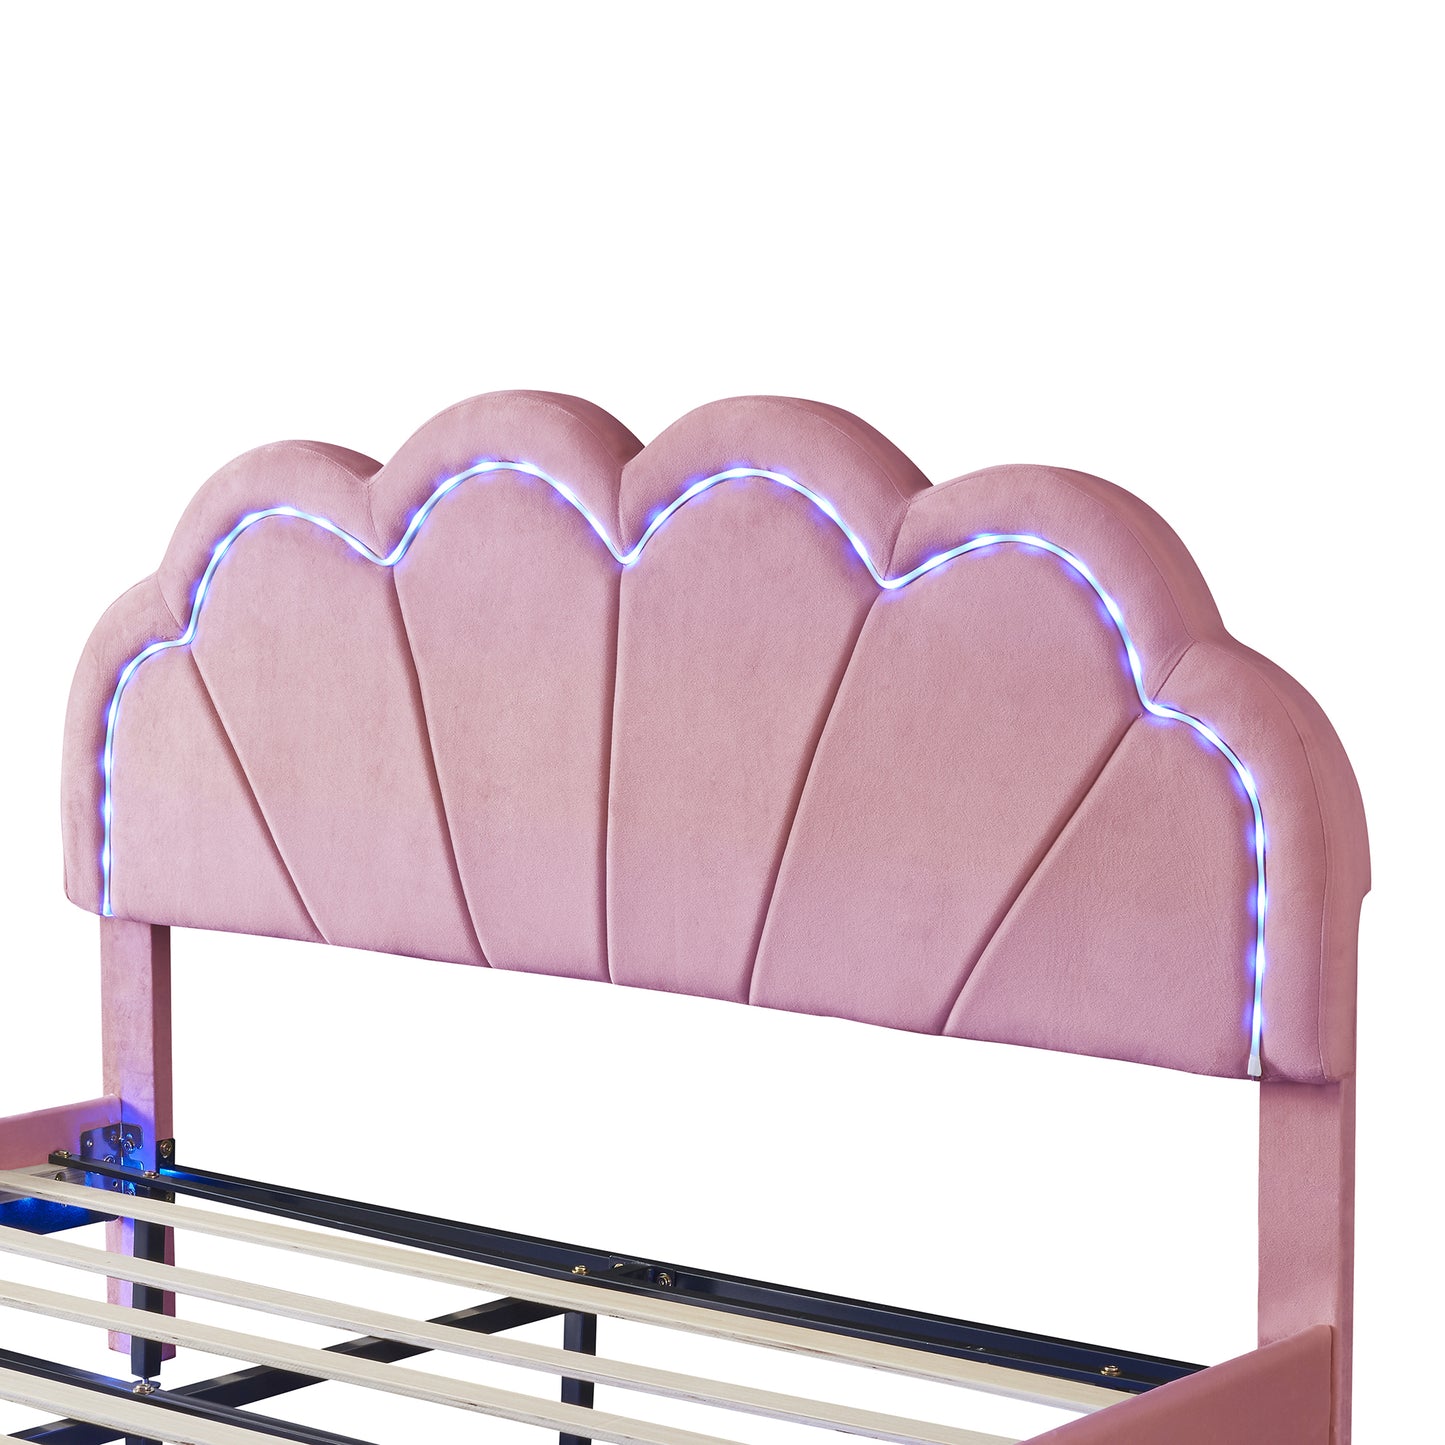 Queen Upholstered Smart LED Bed Frame with Elegant Flowers Headboard,Floating Velvet Platform LED Bed with Wooden Slats Support,Pink